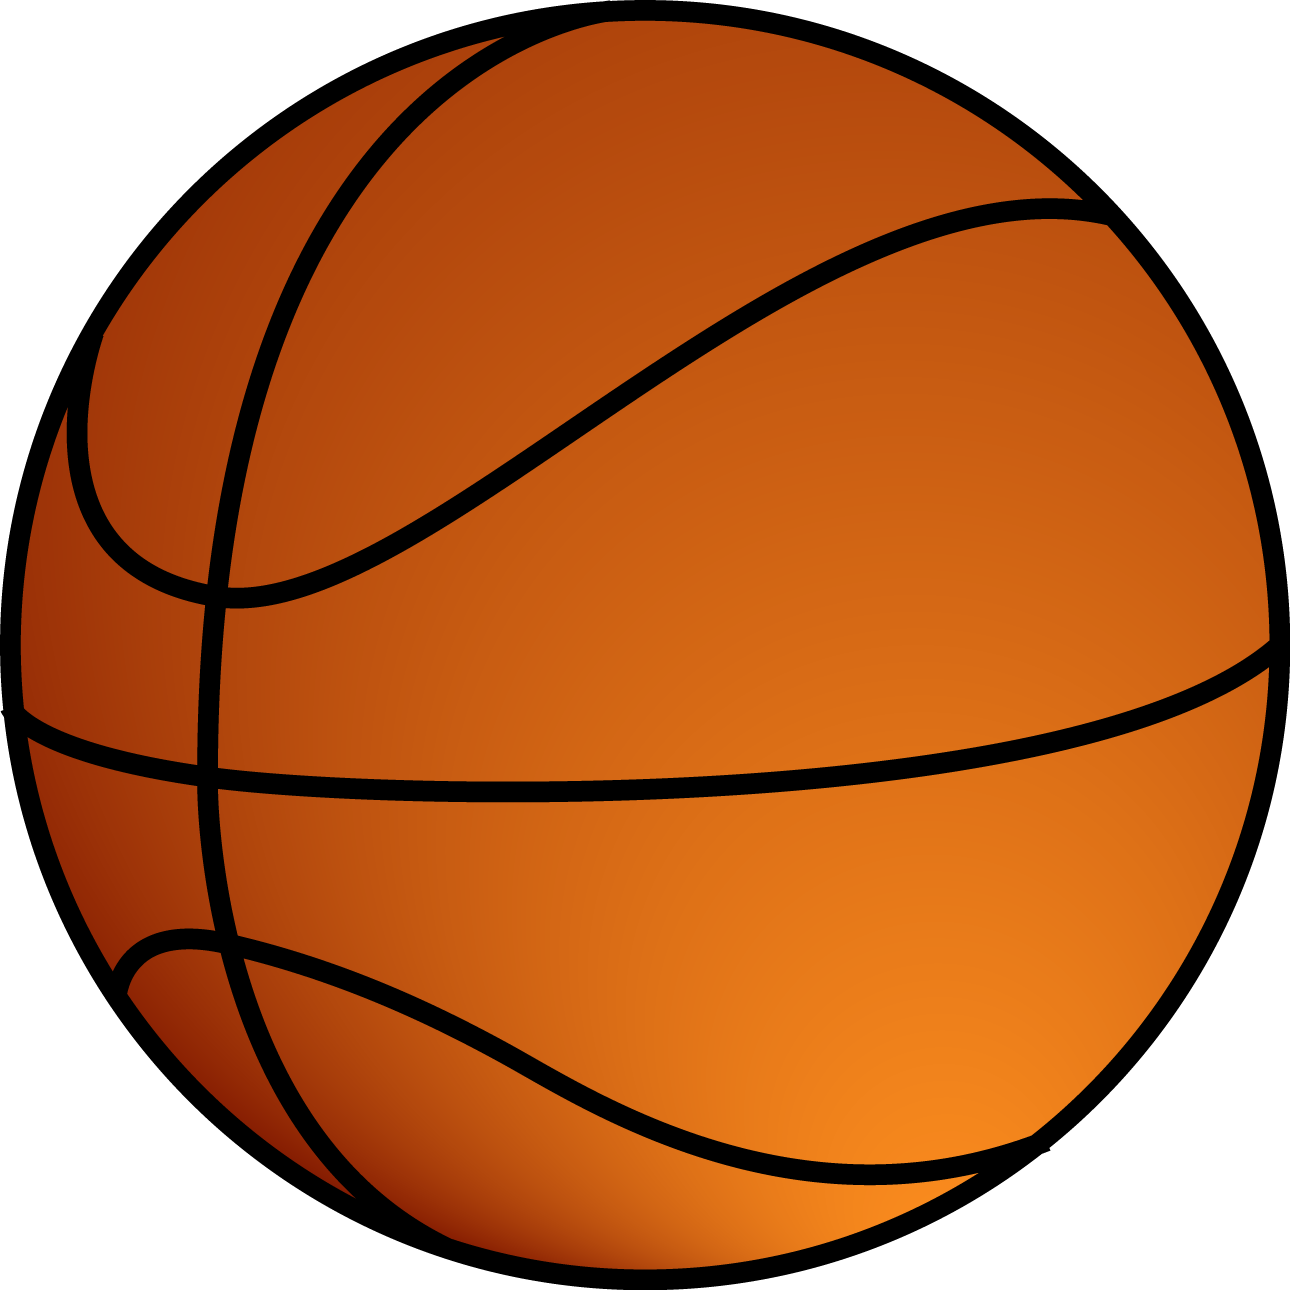 Баскетбольная команда PNG изображения фон